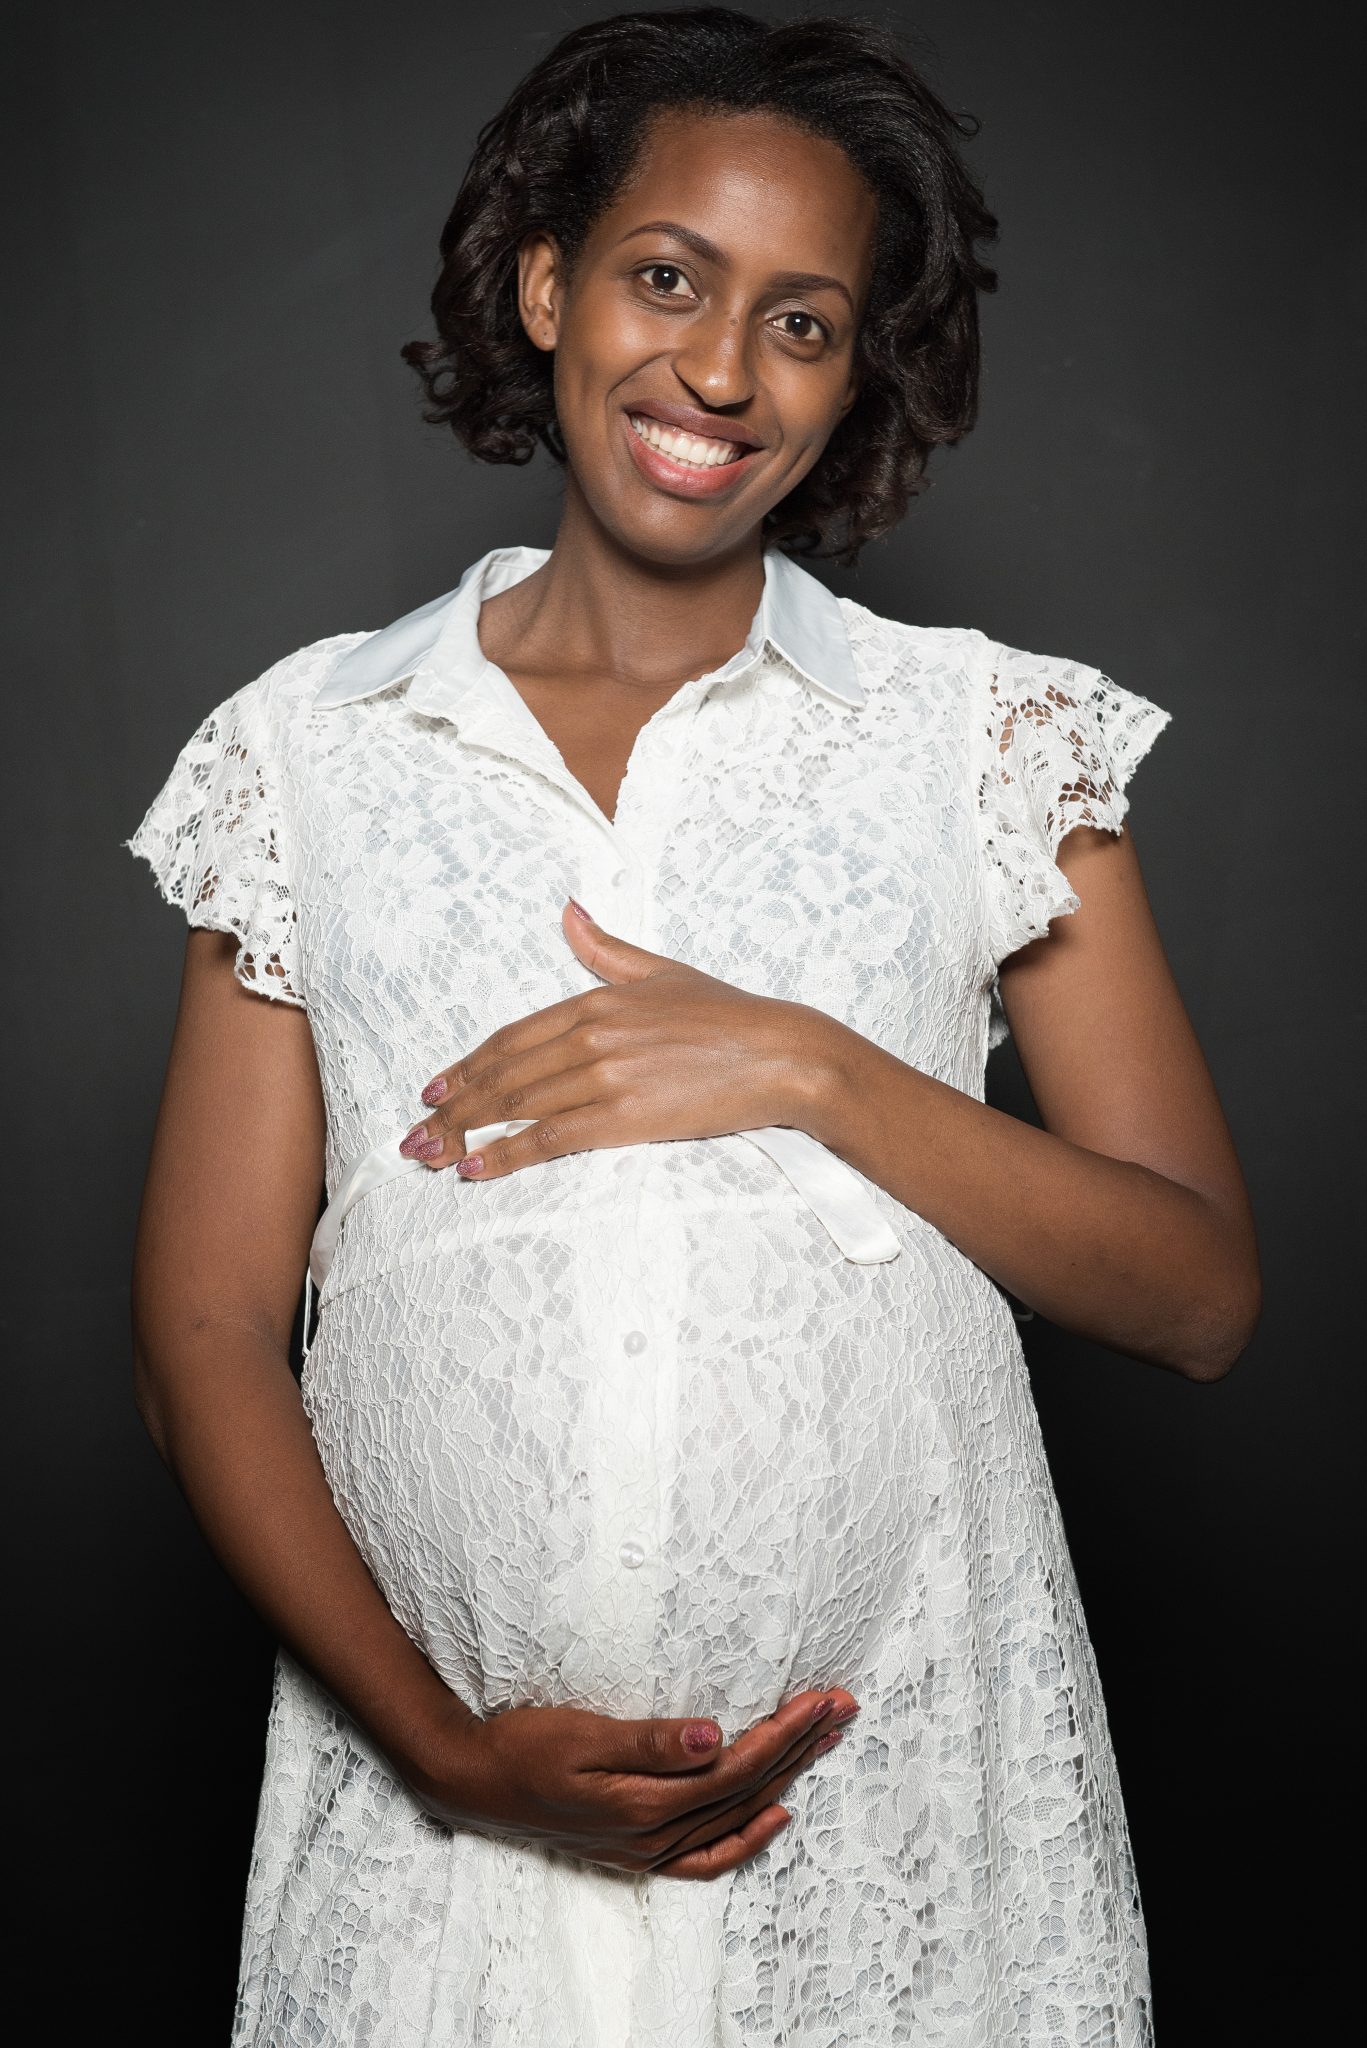 zwangerschap fotoshoot mechelen antwerpen fotograaf stef boey